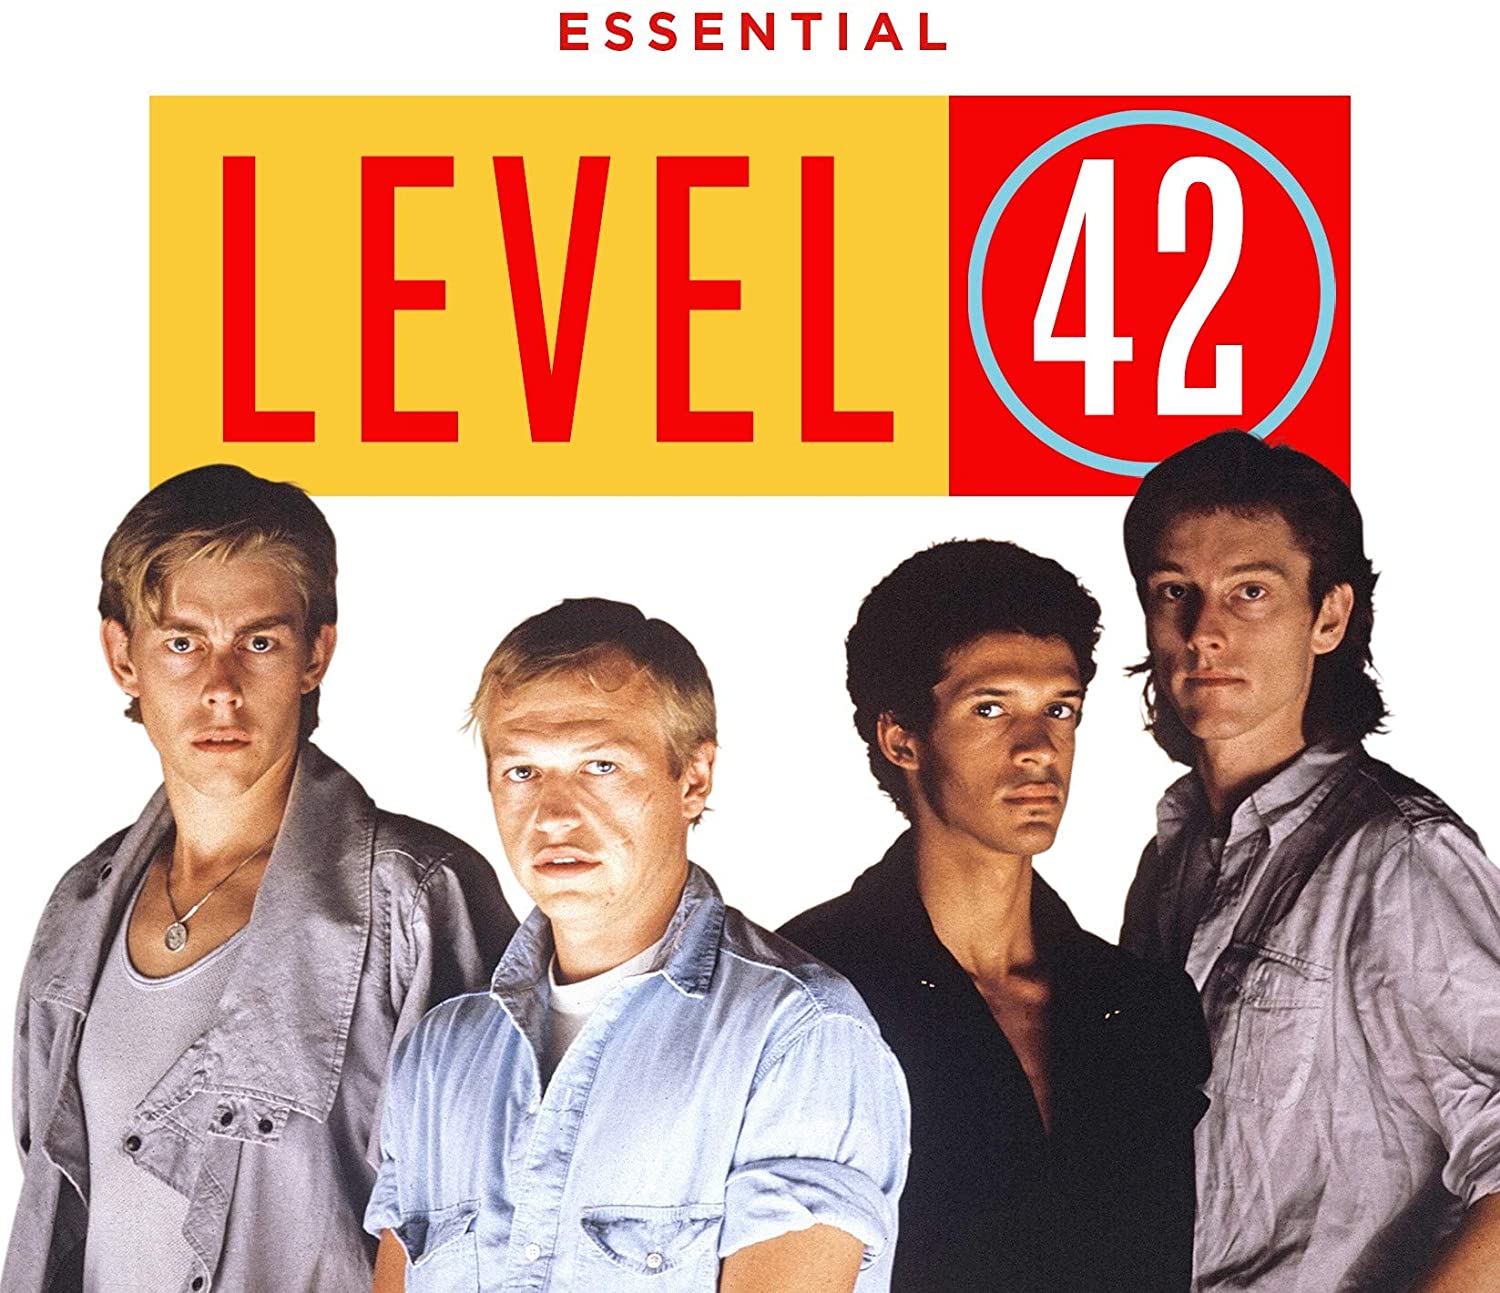 Essential / Level 42